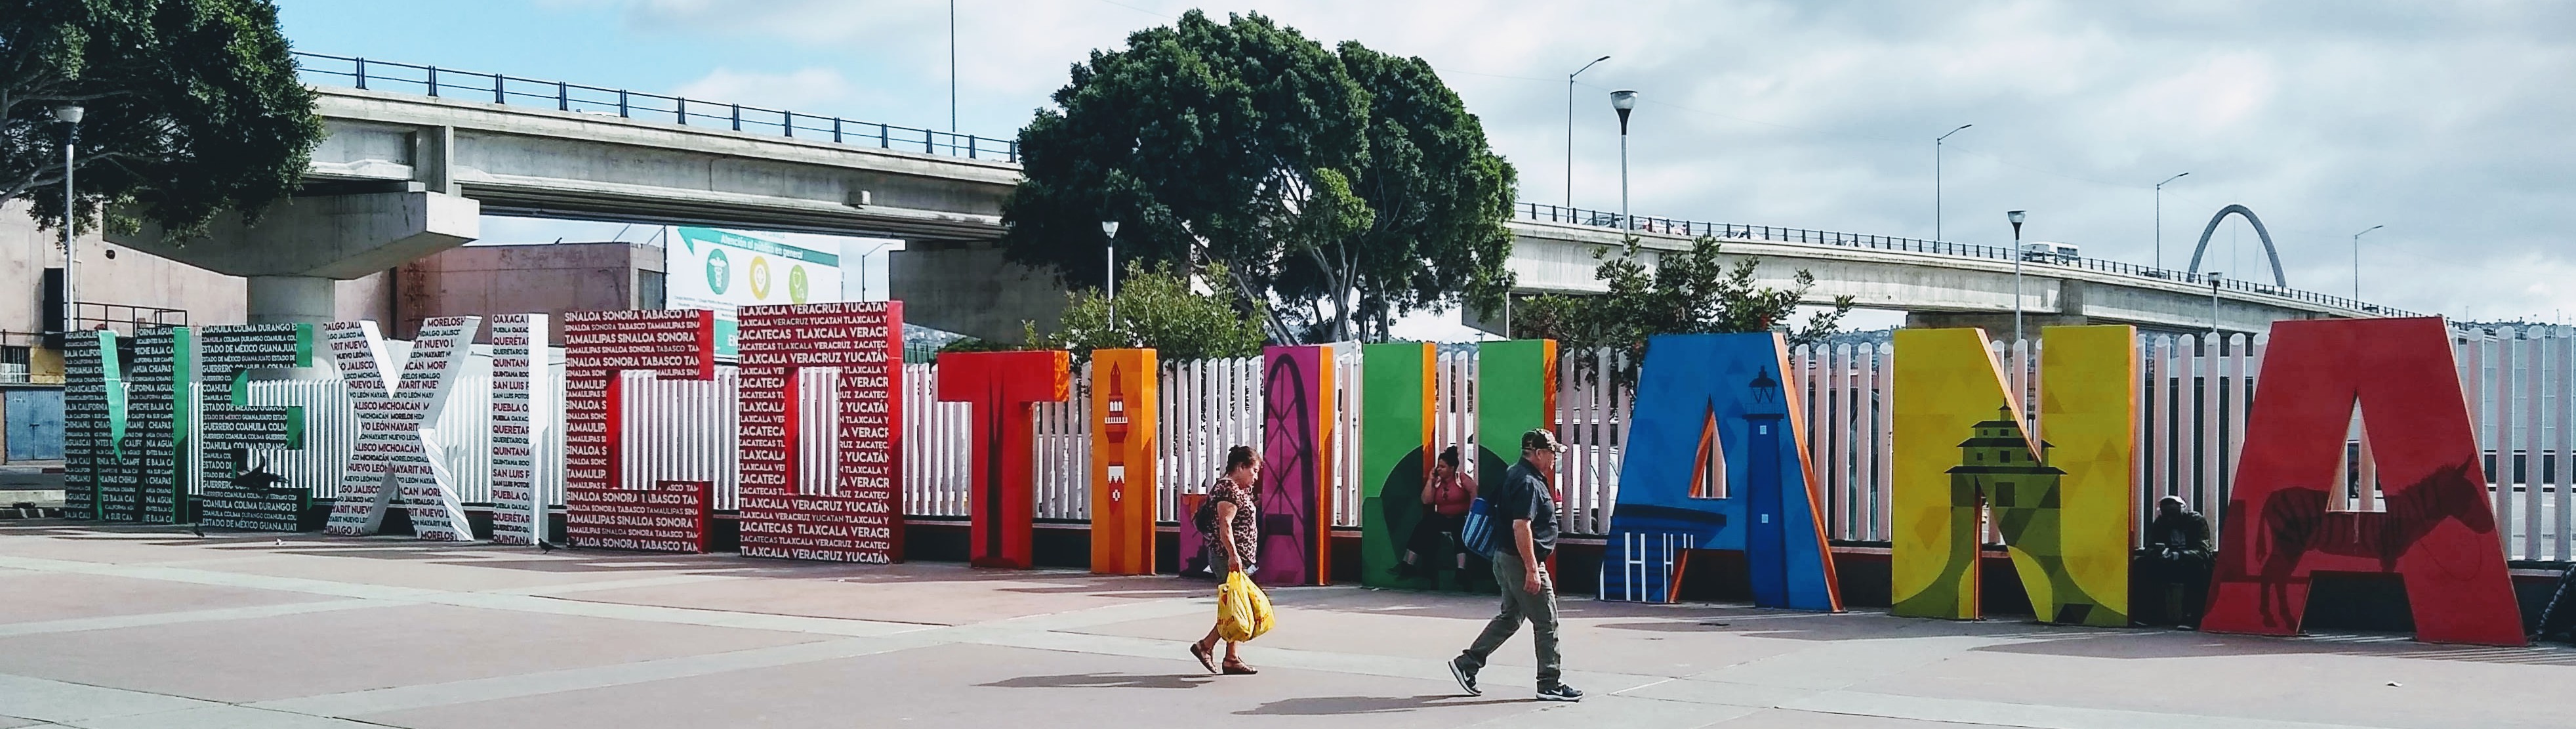 Tijuana, Mexico sign at the U.S. - Mexico border